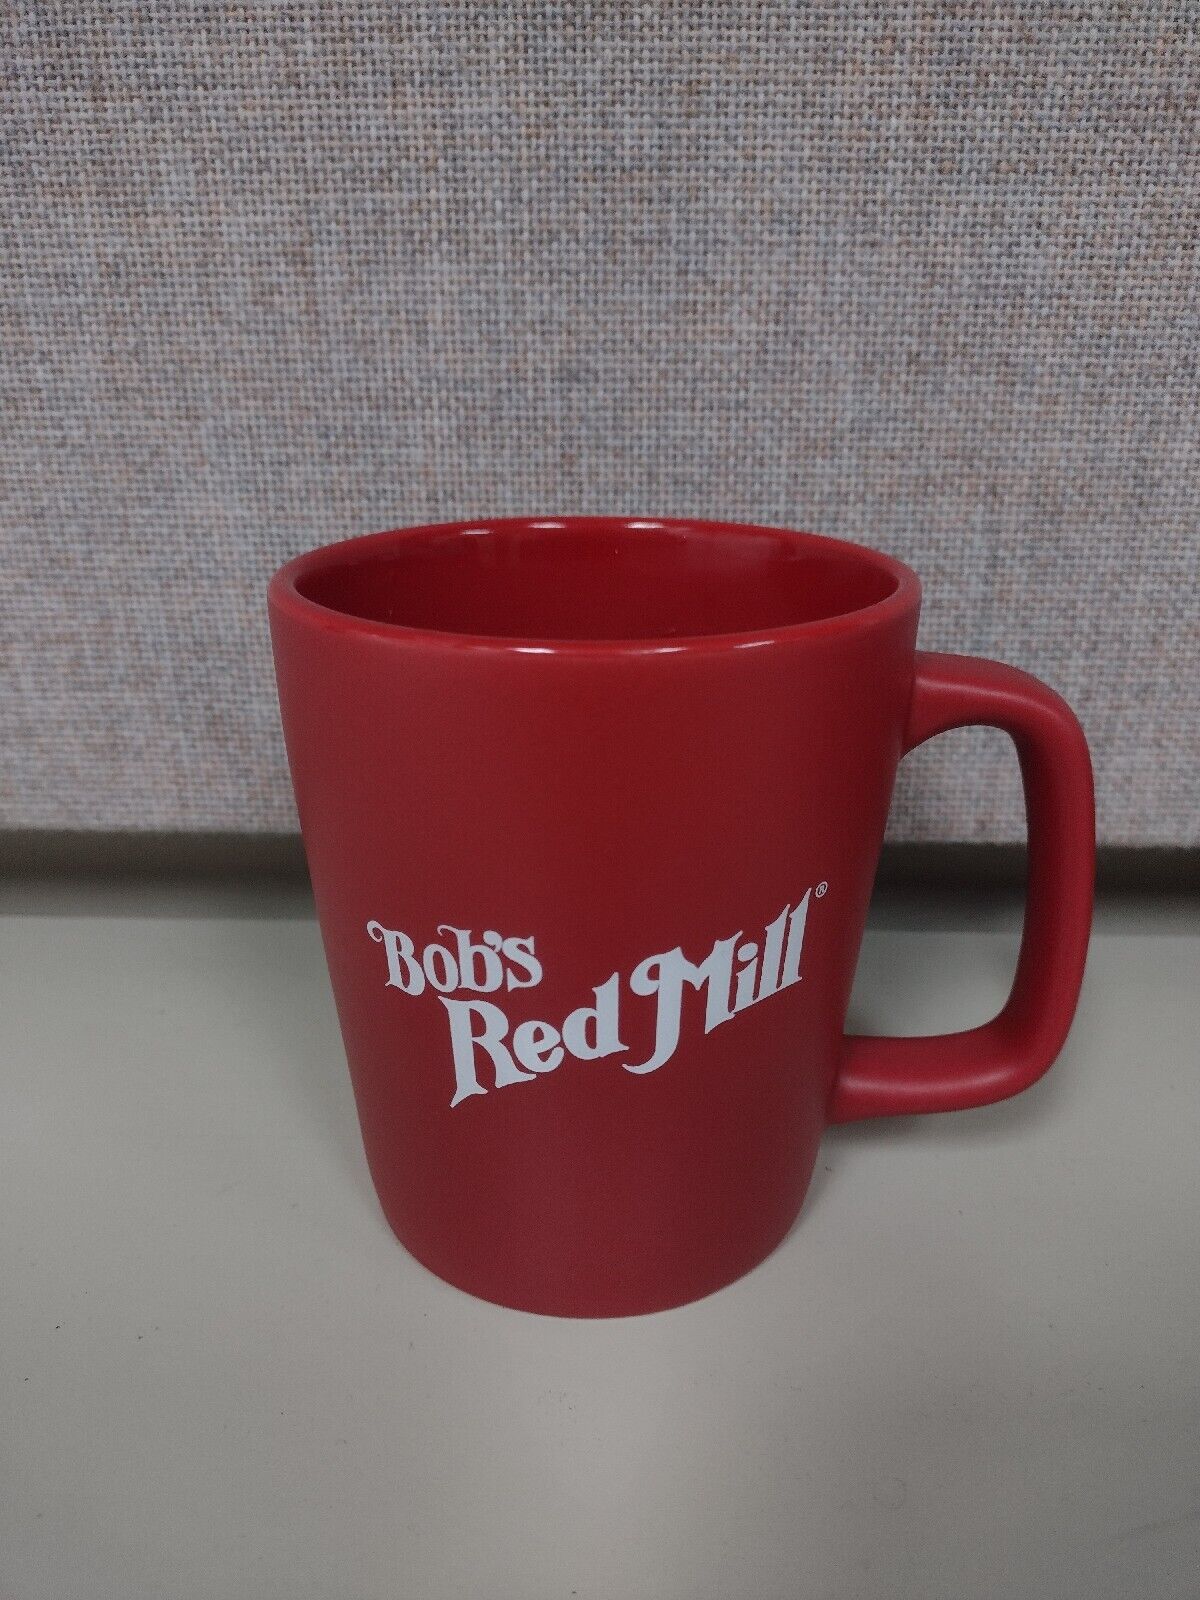 Bobs Red Mill Mug